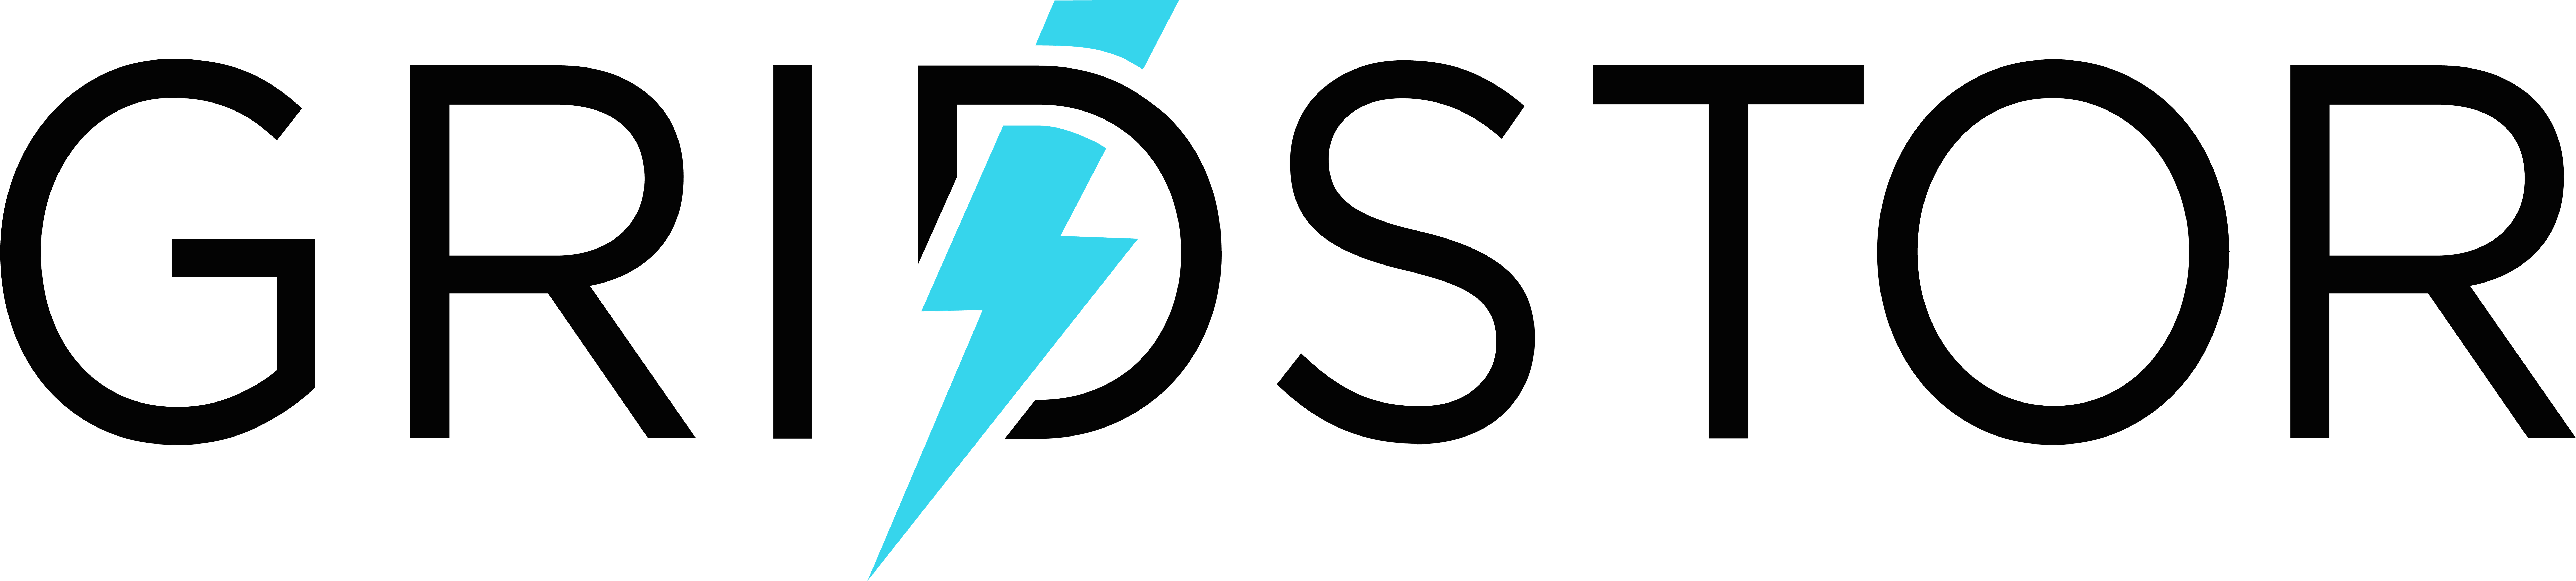 Primary-Gridstor-logo2